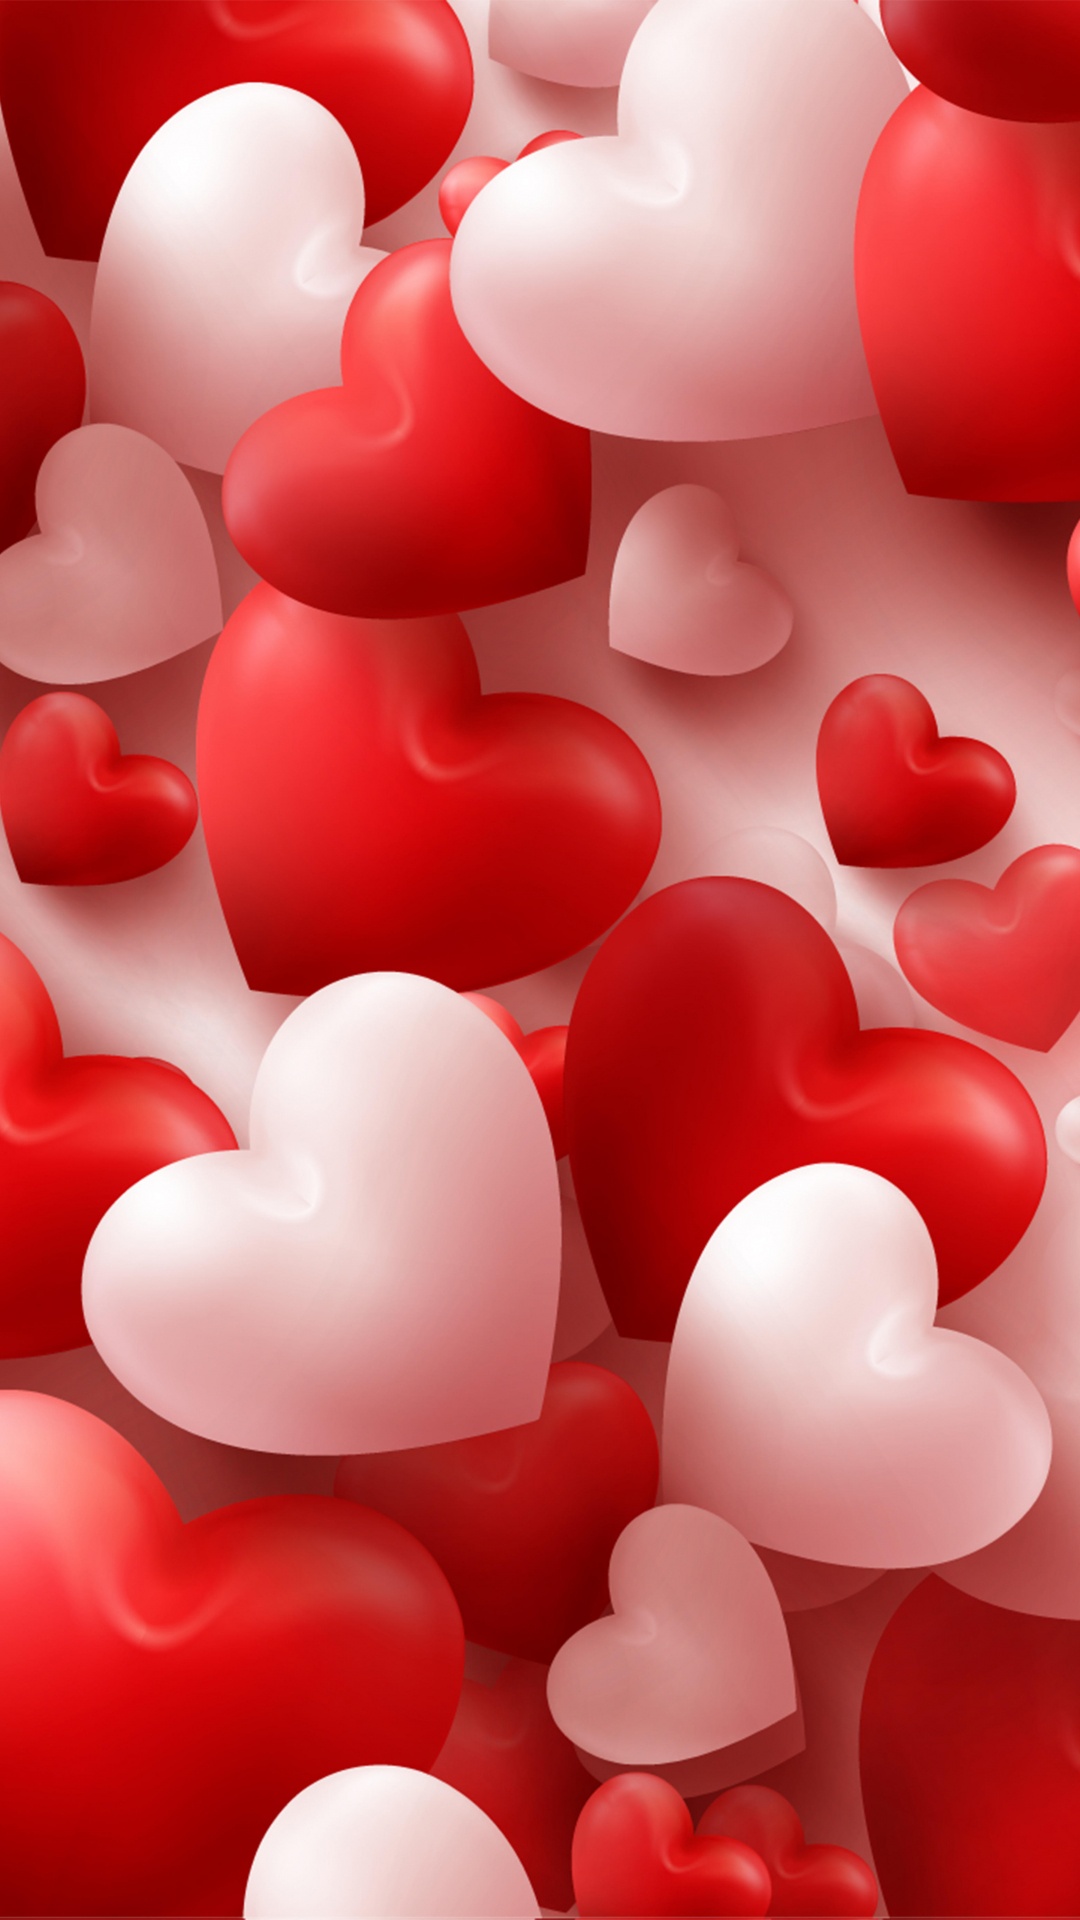 el Día de San Valentín, Coraz, Rojo, Amor, Rosa. Wallpaper in 1080x1920 Resolution